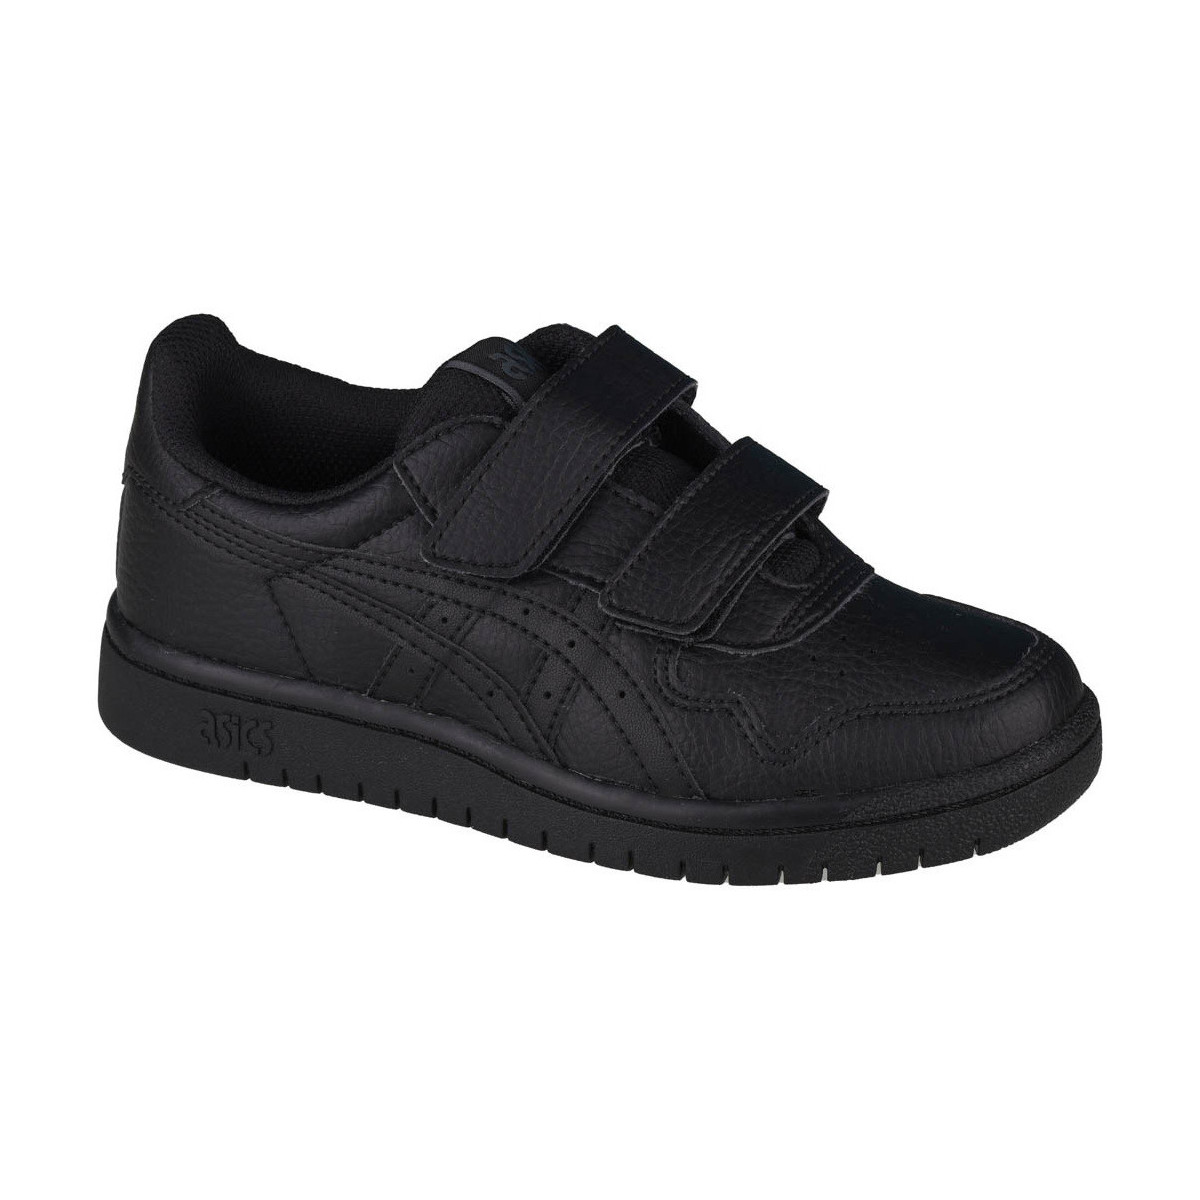 Pantofi Băieți Pantofi sport Casual Asics Asics Japan S PS Negru